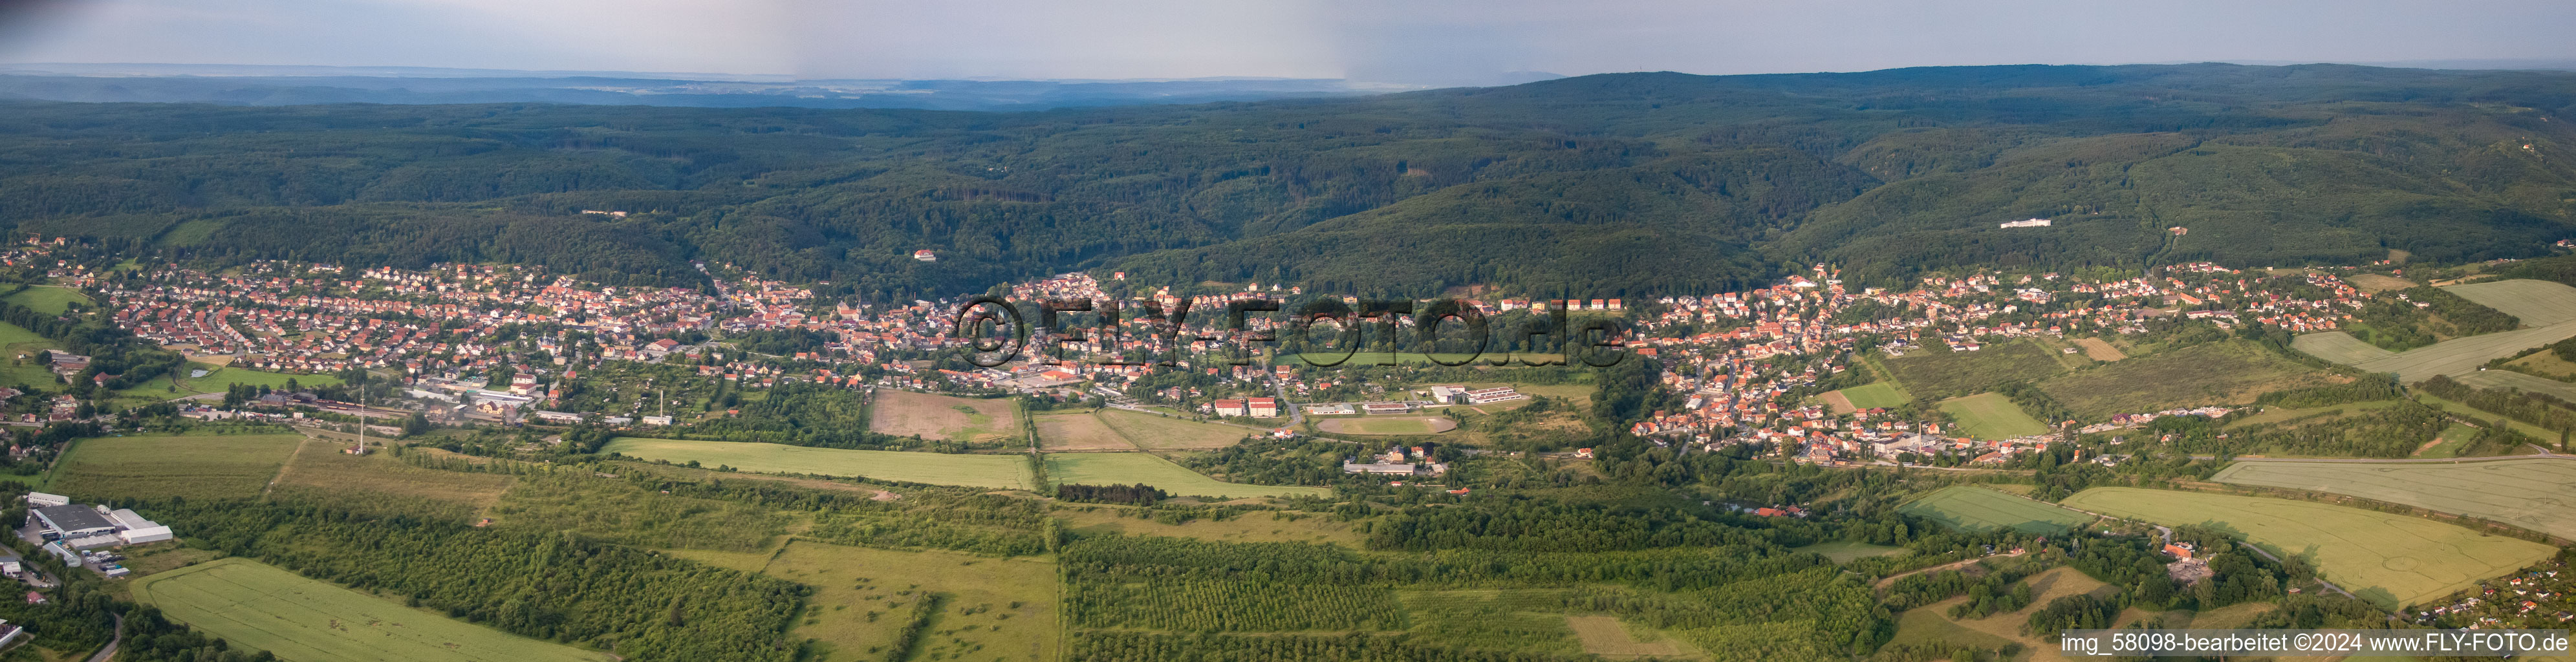 Panorama-Perspektive Wald und Berglandschaft des Harz Rands in Gernrode im Bundesland Sachsen-Anhalt, Deutschland